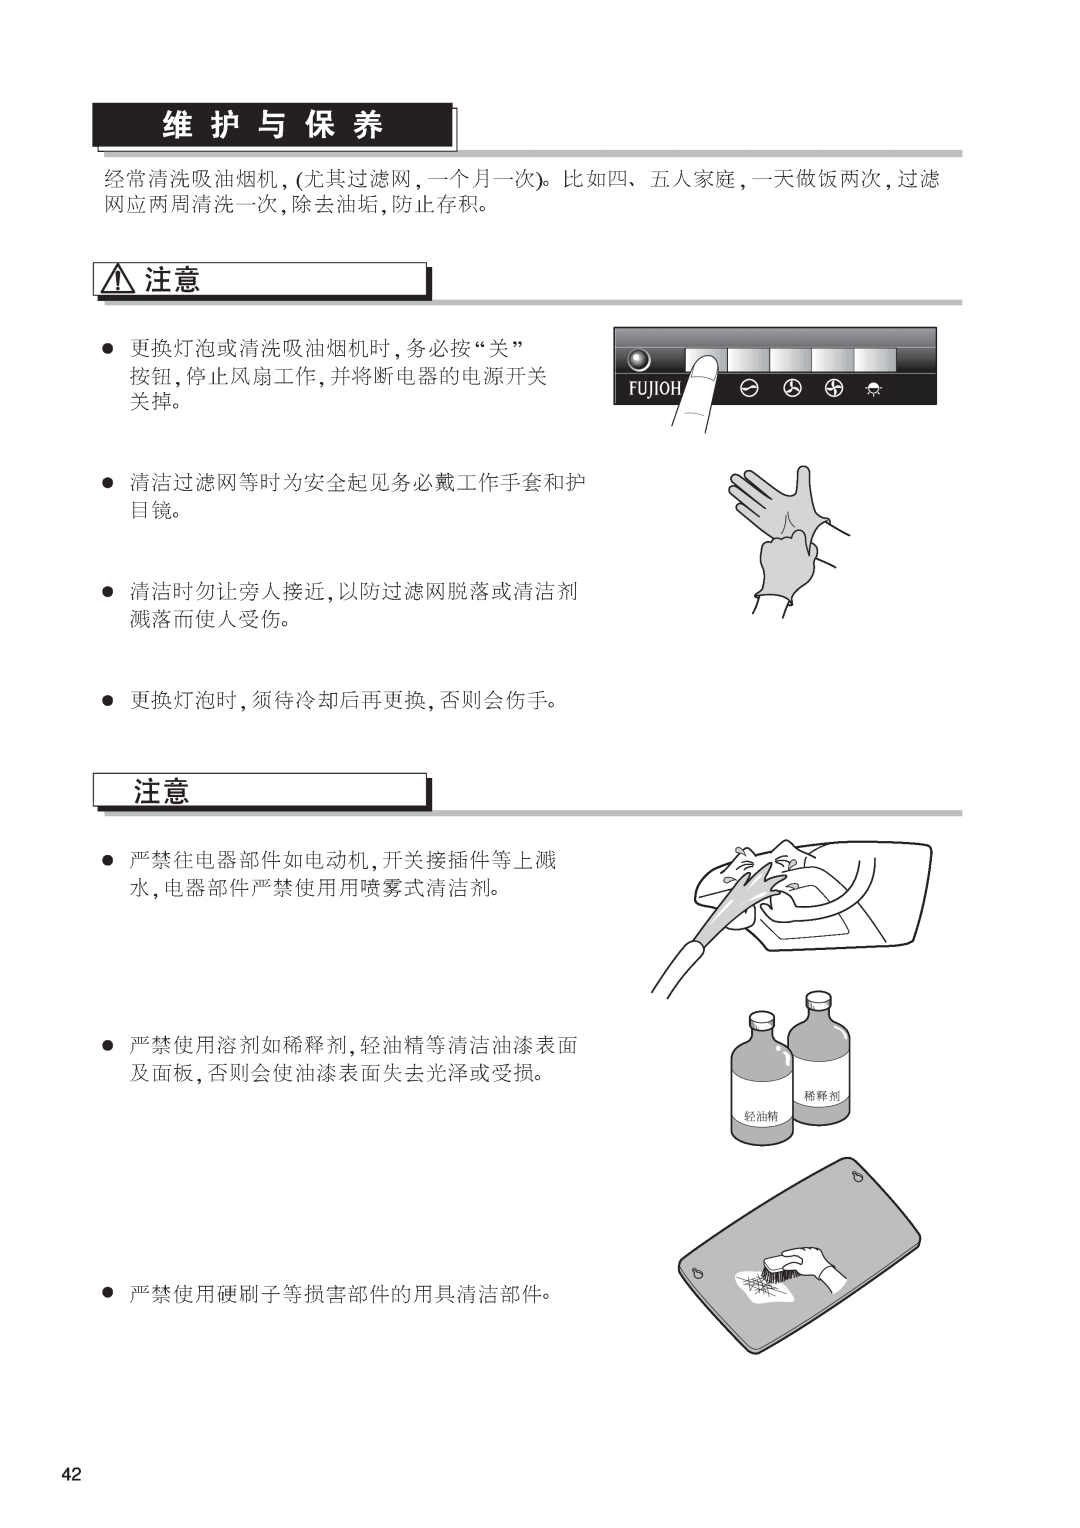 Fujioh FDR-4200D operation manual “ ” 